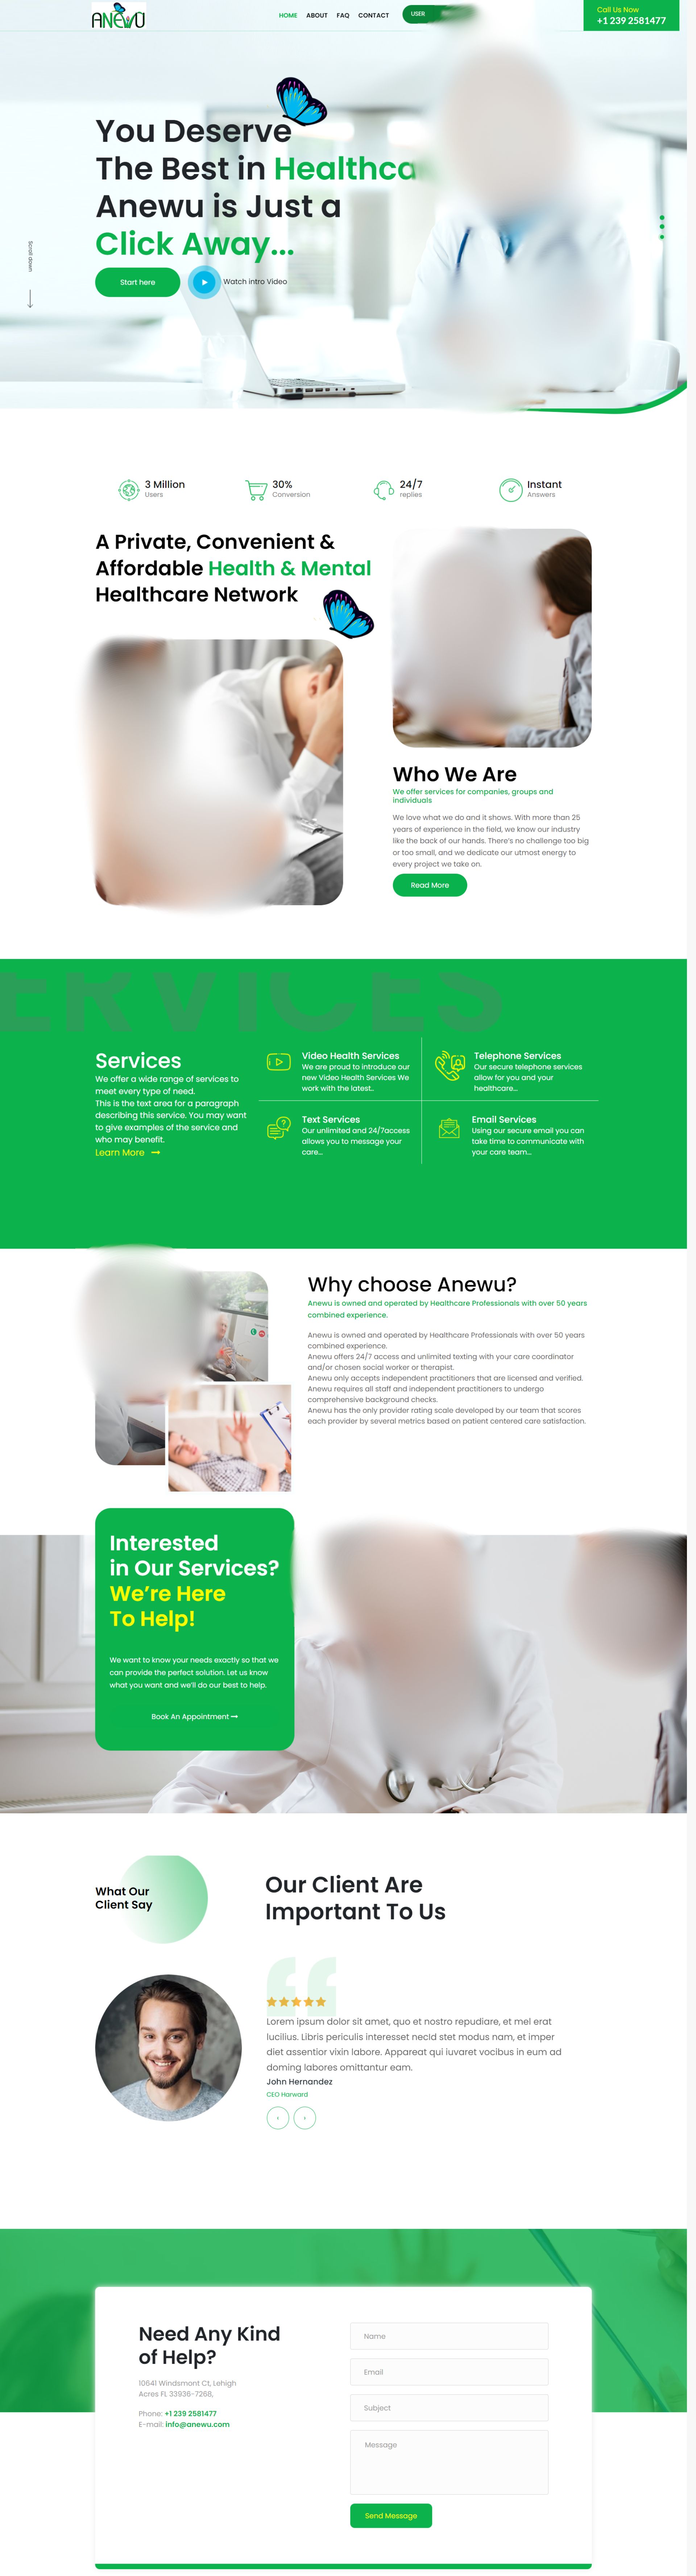 anewu health care website design portfolio